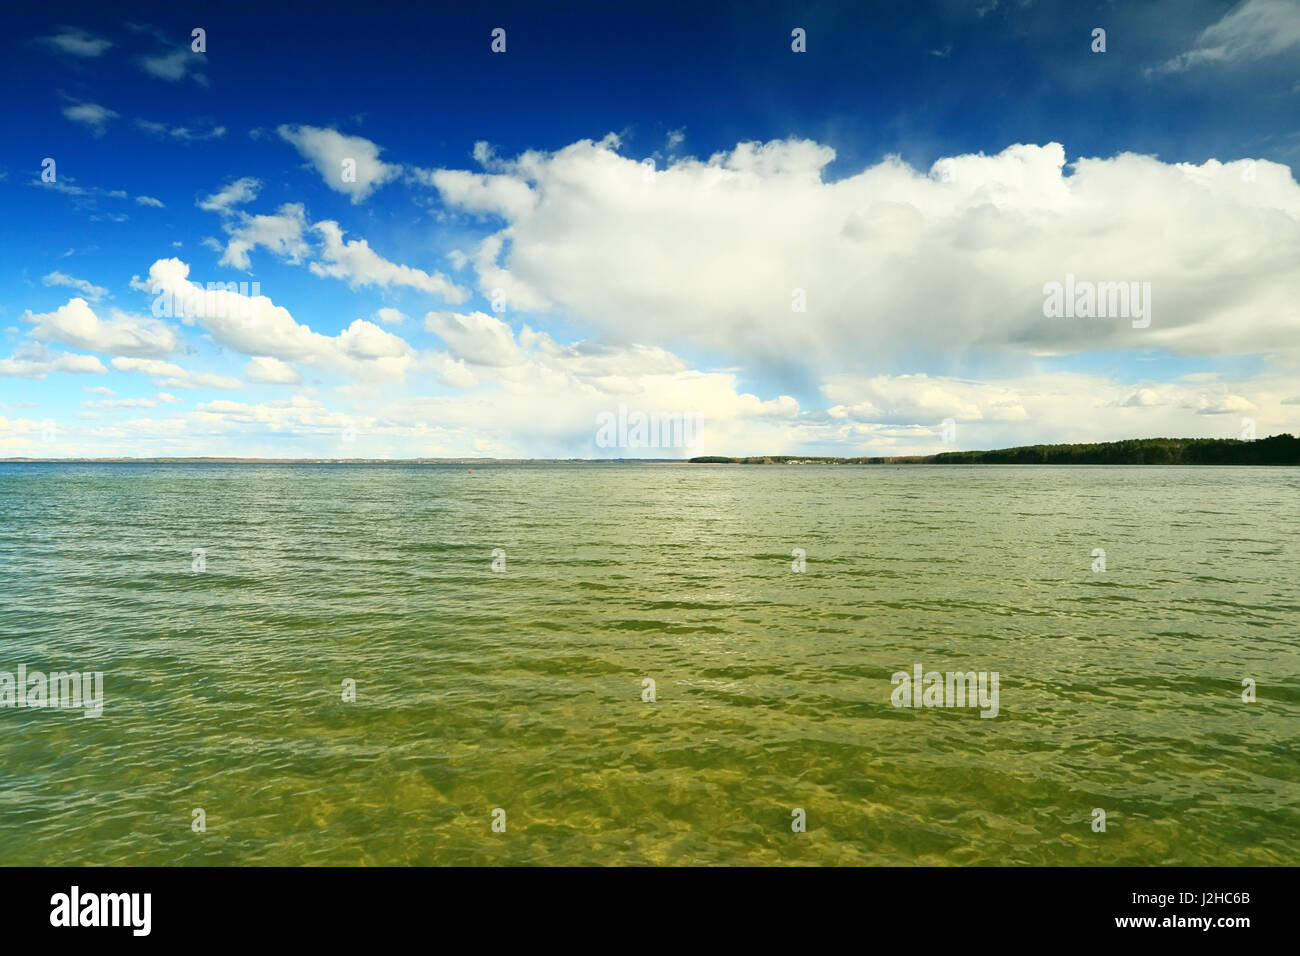 Il cielo blu con nuvole bianche su chiare acque trasparenti. Giornata di sole sul lago. Foto Stock